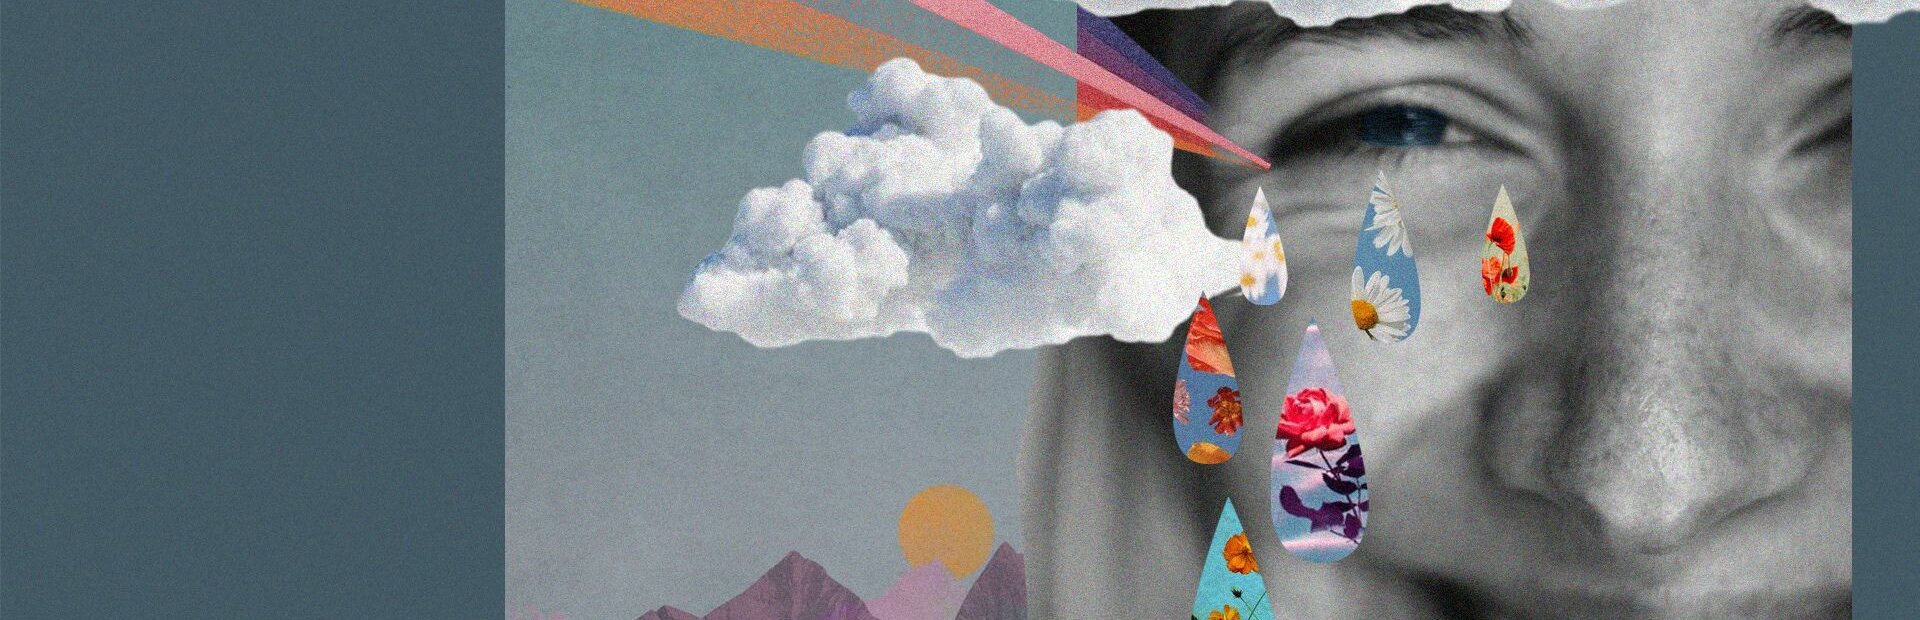 Collage: Berge, Regenbogen, Frau - Gesicht, Tropfen, Wolken